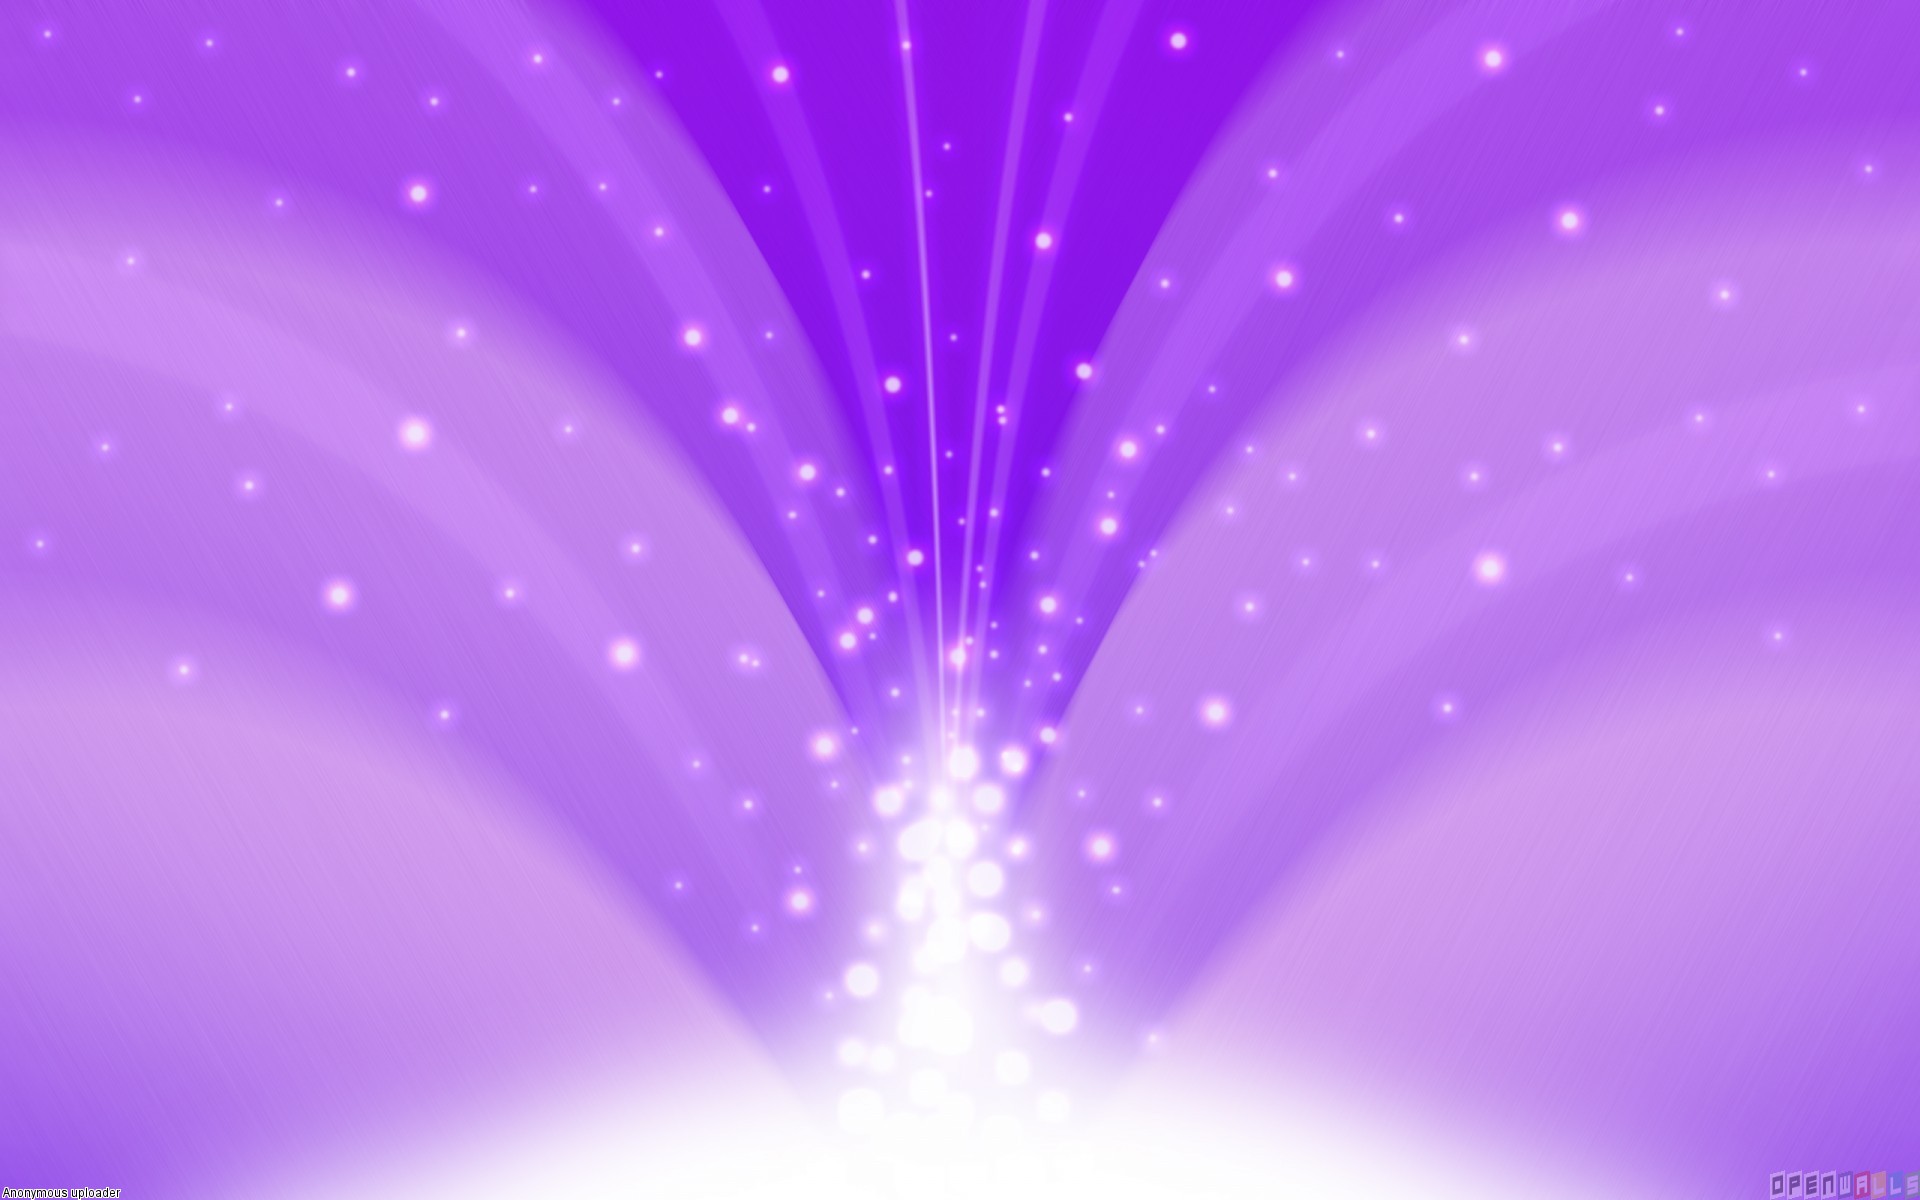 Violet Background - HD Wallpaper 